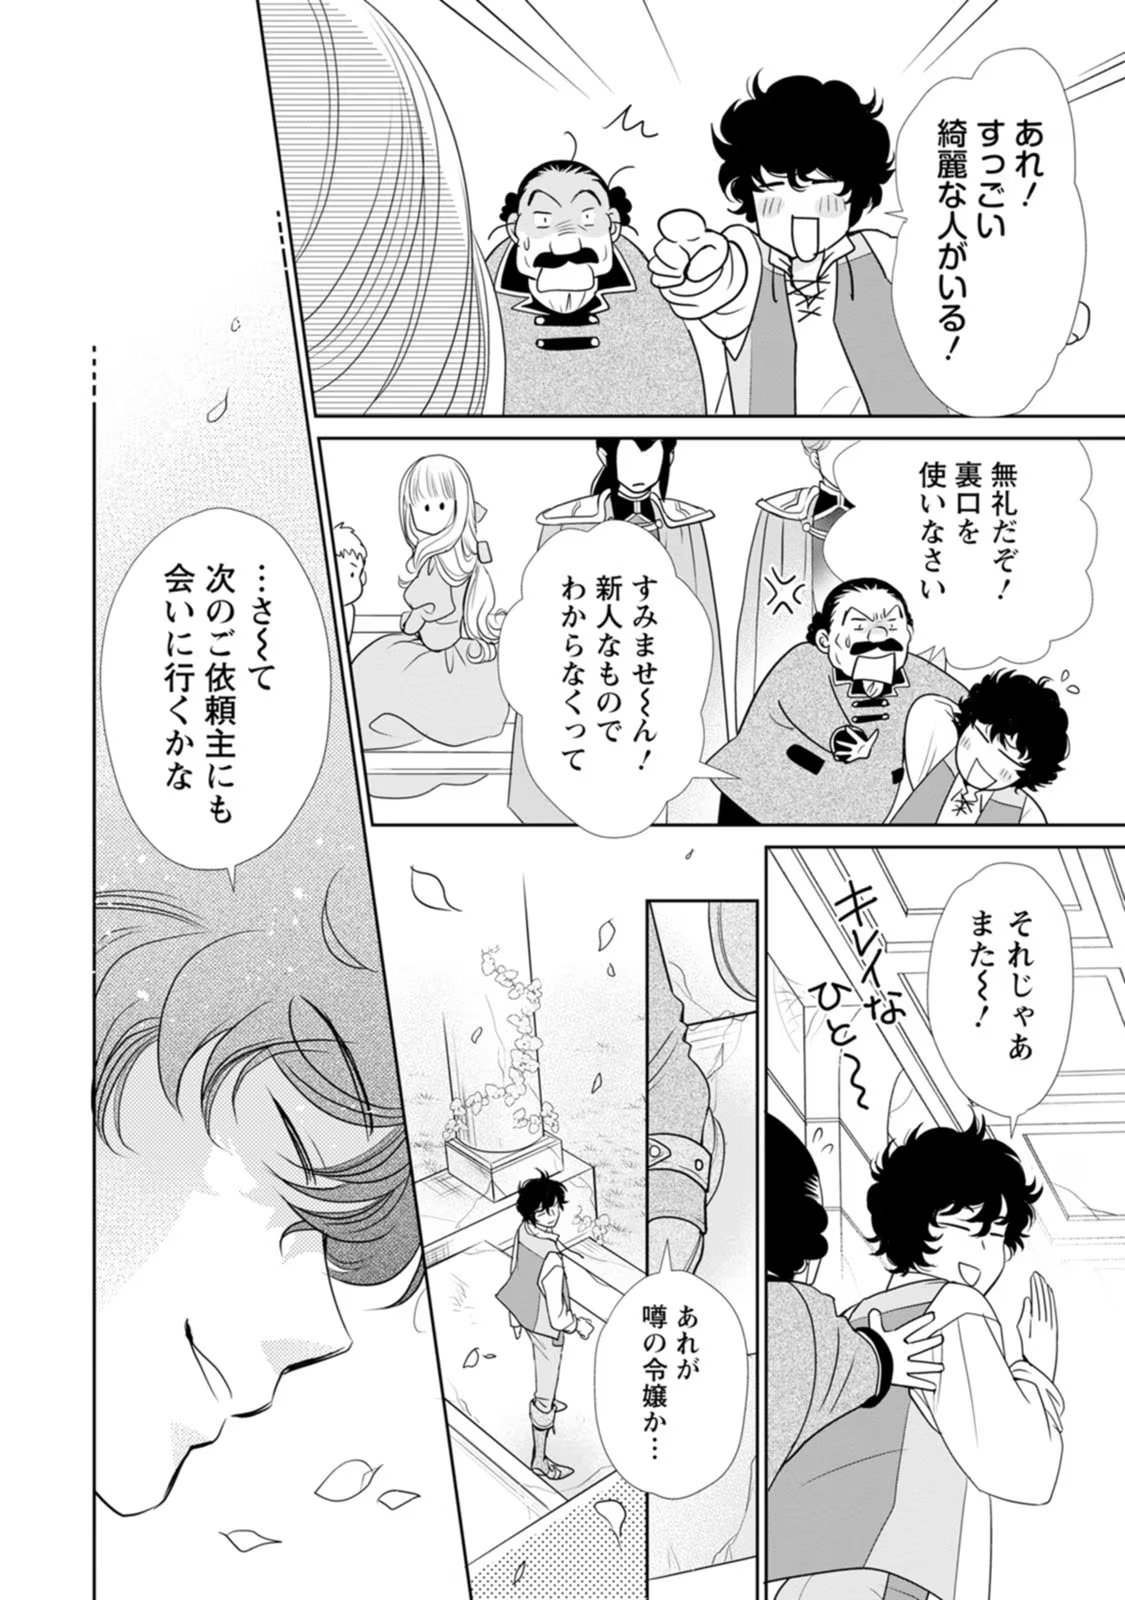 Shinjitsu no Ai wo Mitsuketa to Iwarete Konyaku Haki Saretanode, Fukuen wo Semararete mo Imasara mo Osoi desu! - Chapter 20 - Page 18